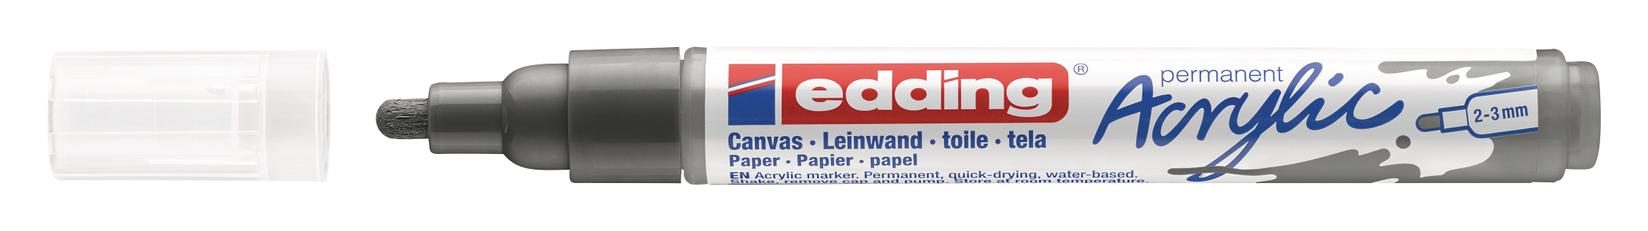 Selected image for EDDING Akrilni marker medium 2-3mm obli vrh E-5100 antracit